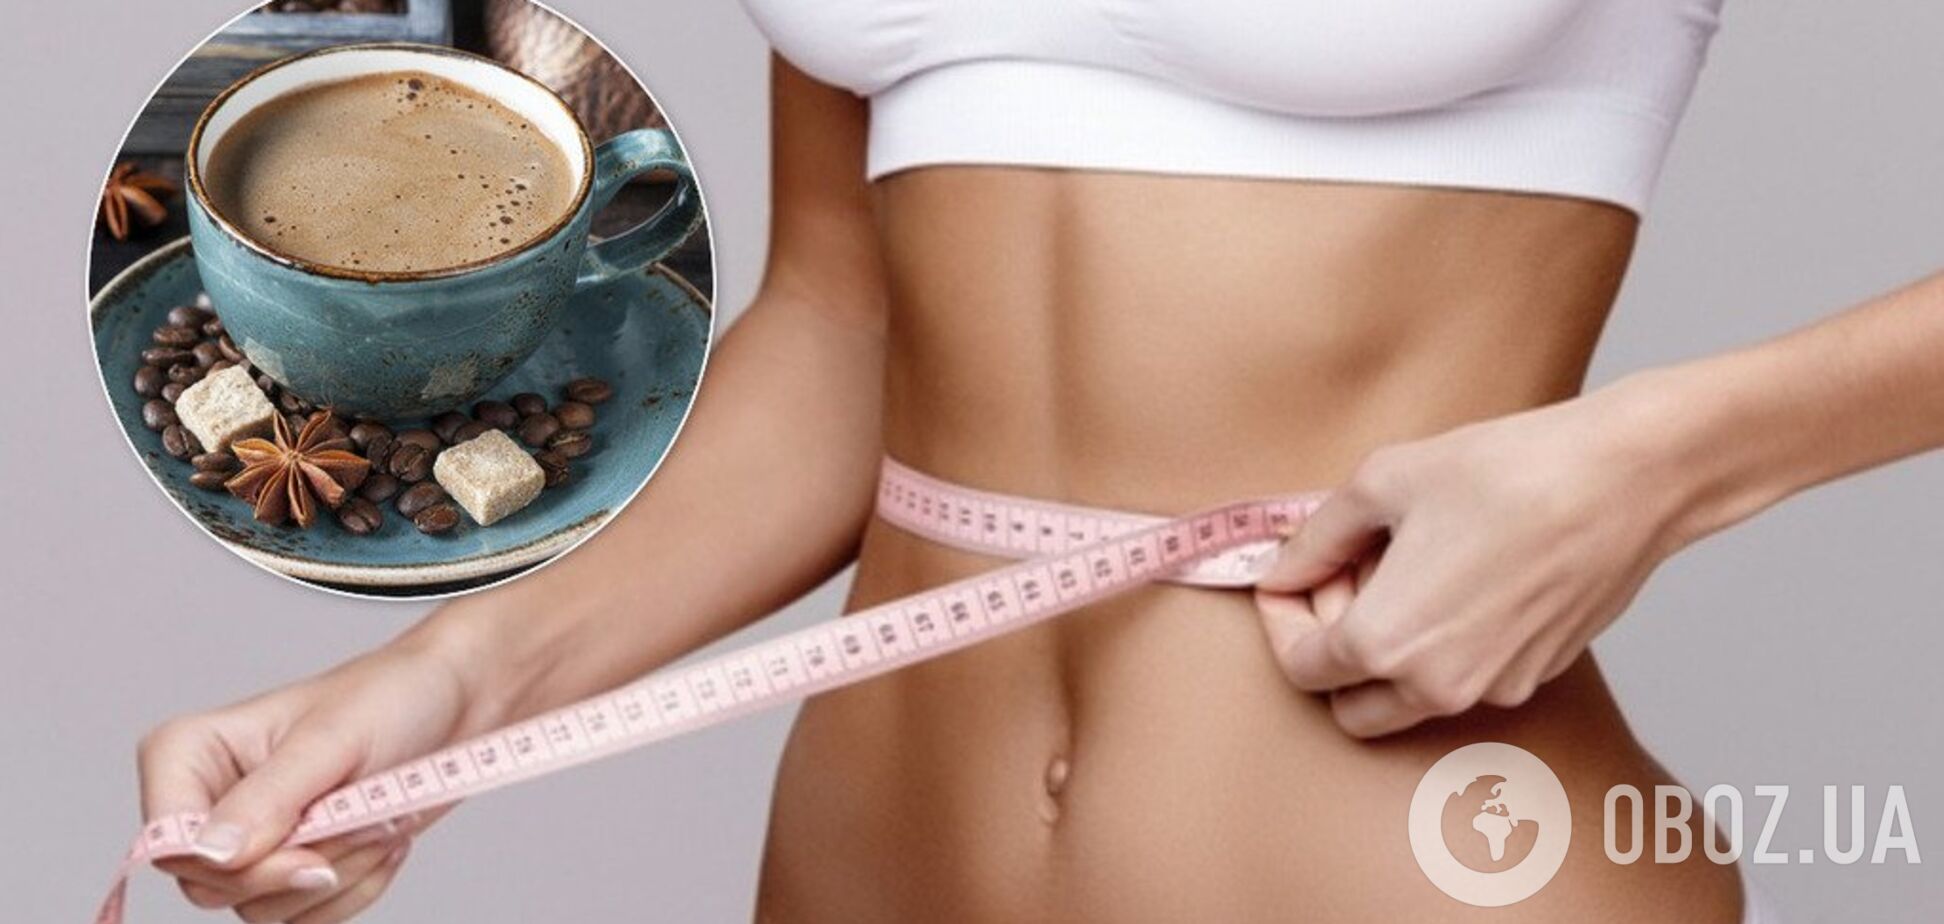 Дієтологиня розповіла, як кава впливає на схуднення